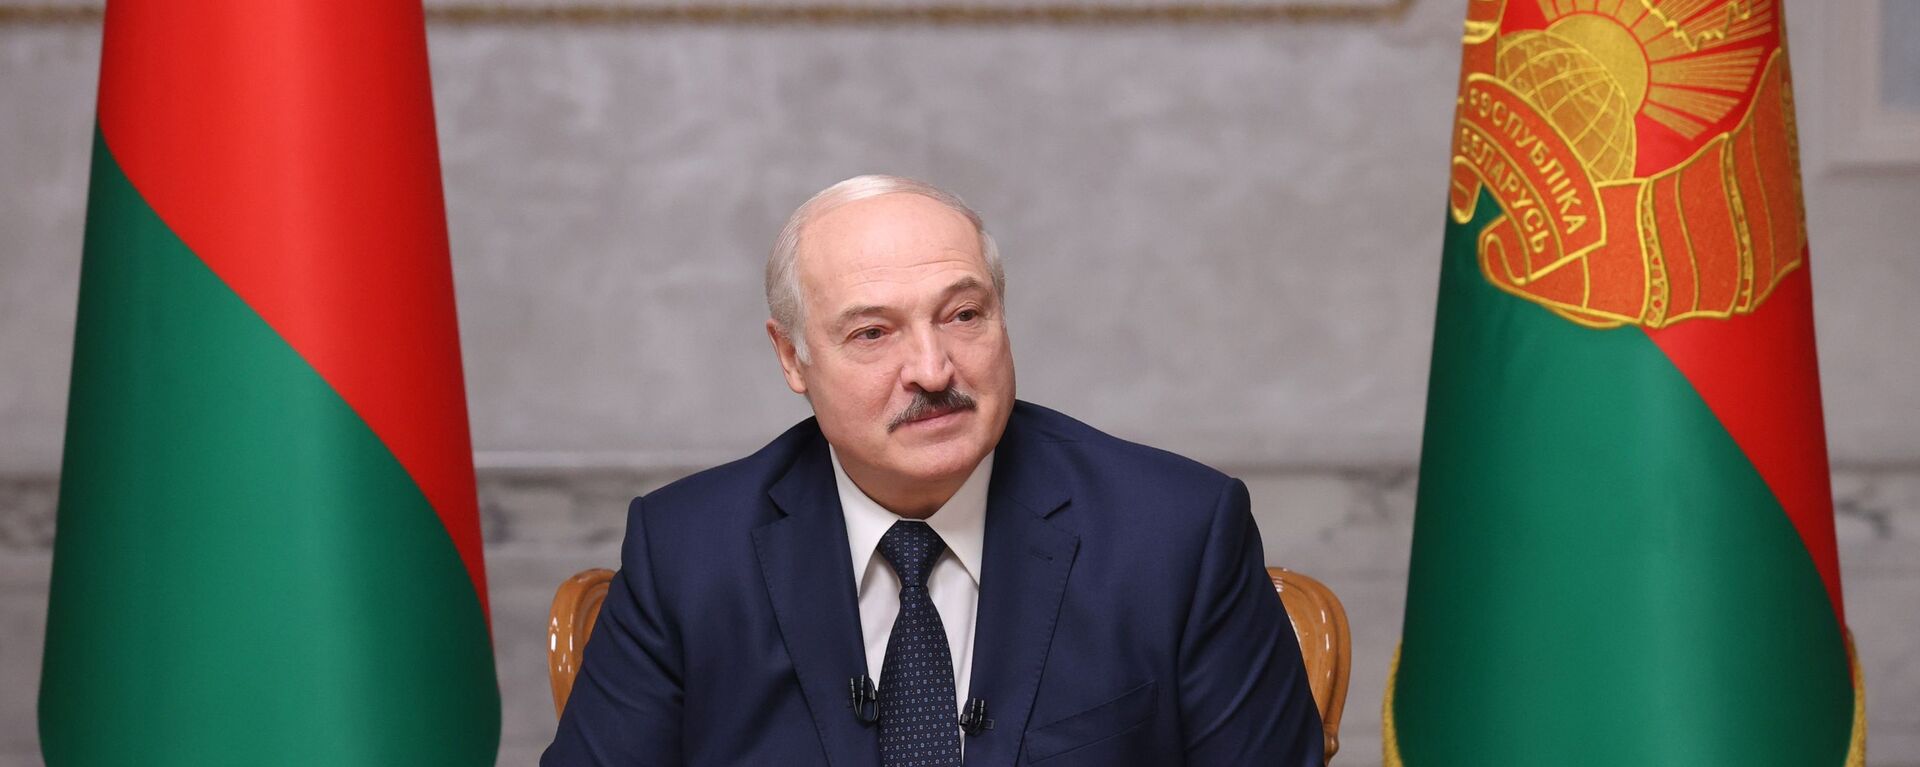 Alexandr Lukashenko, presidente de Bielorrusia  - Sputnik Mundo, 1920, 04.11.2021